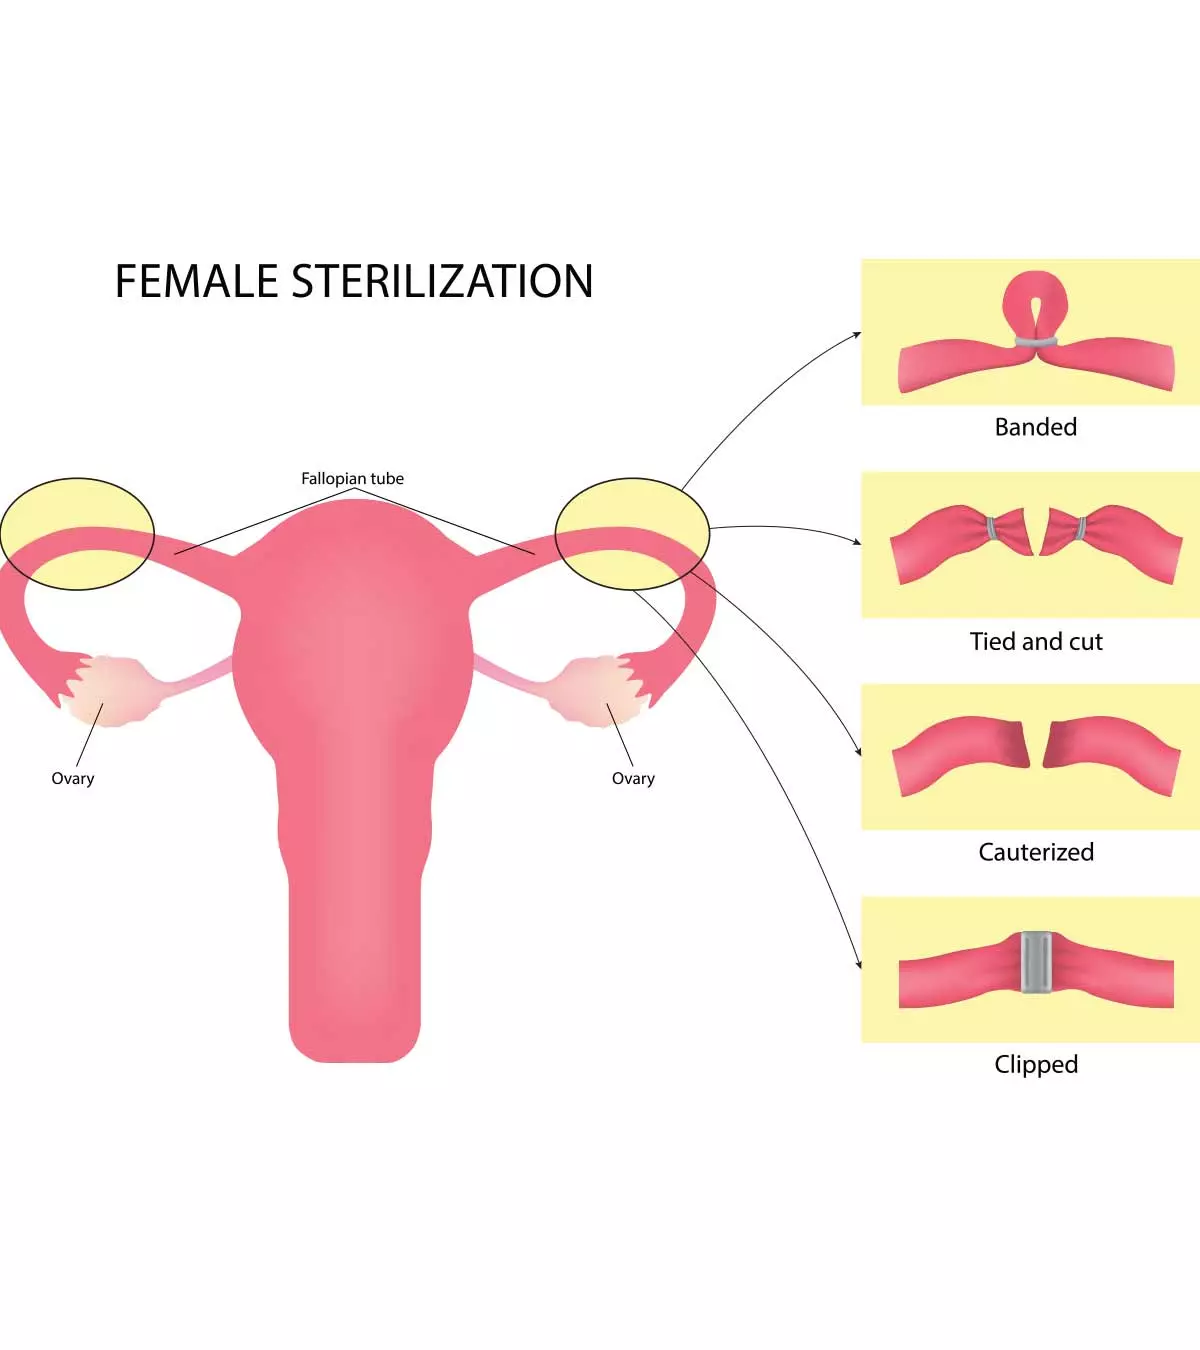 महिला नसबंदी: प्रक्रिया, लागत व ऑपरेशन के बाद देखभाल | Female Sterilization In Hindi